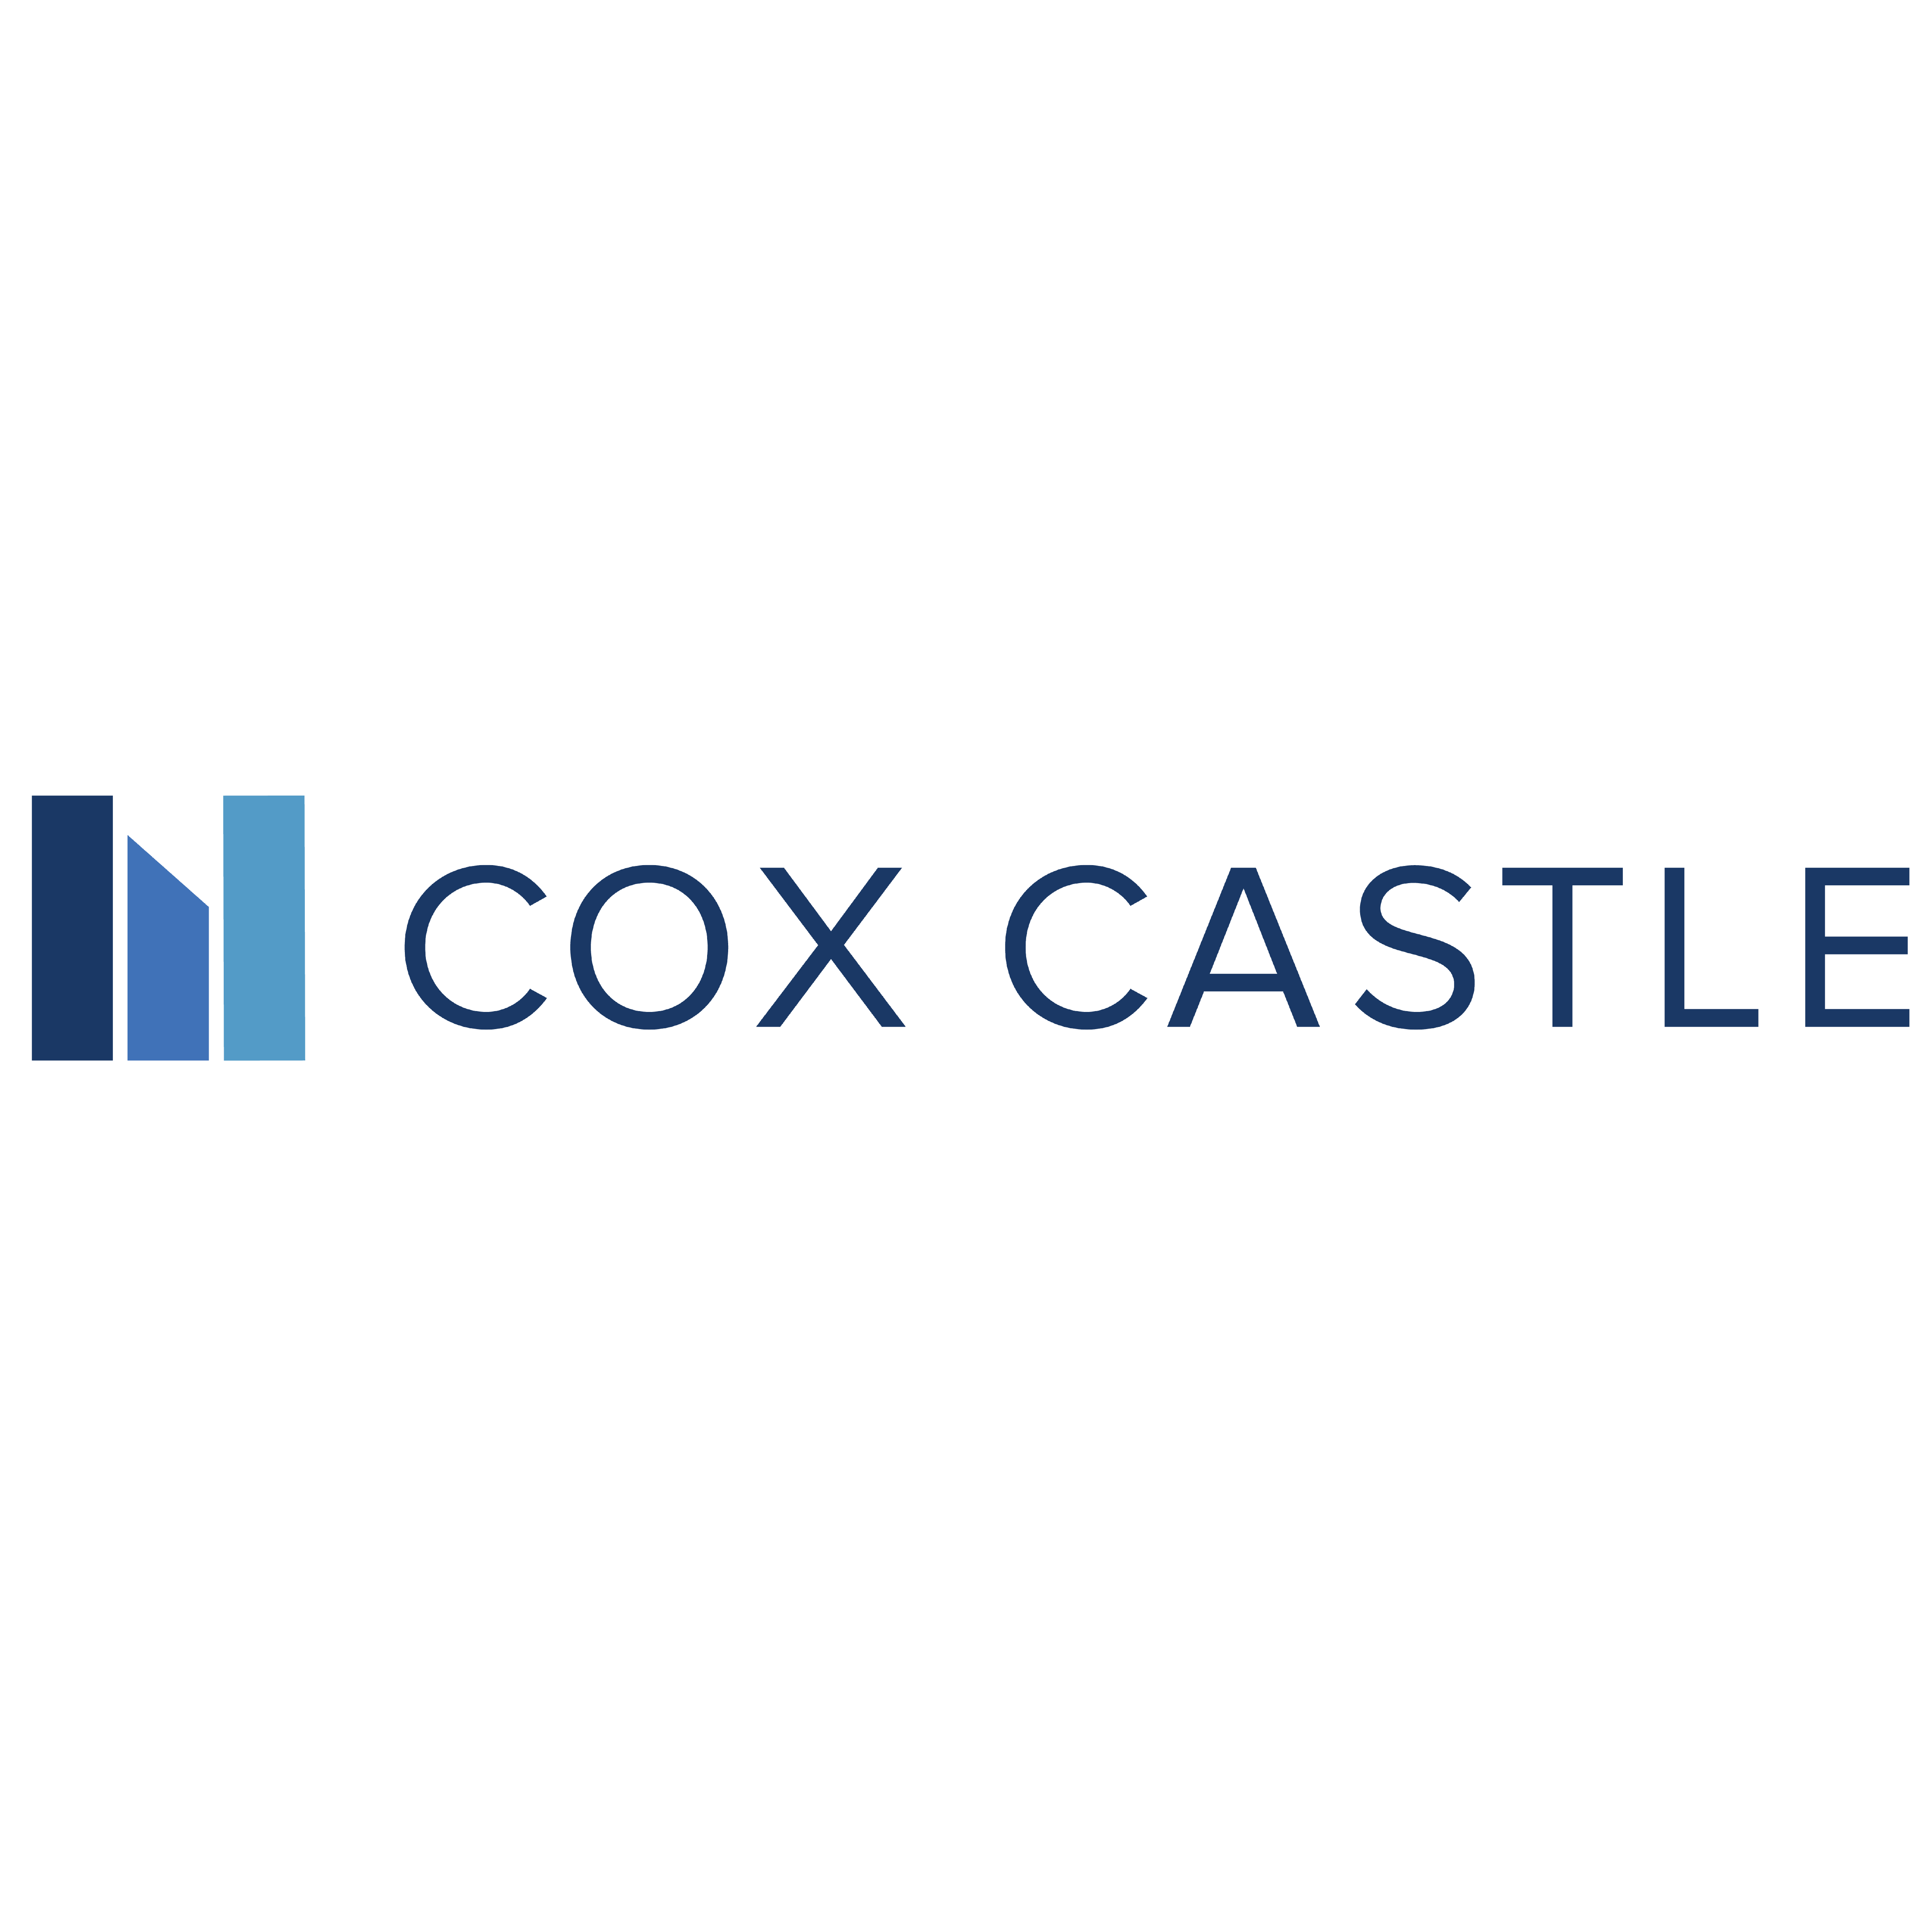 Cox Castle